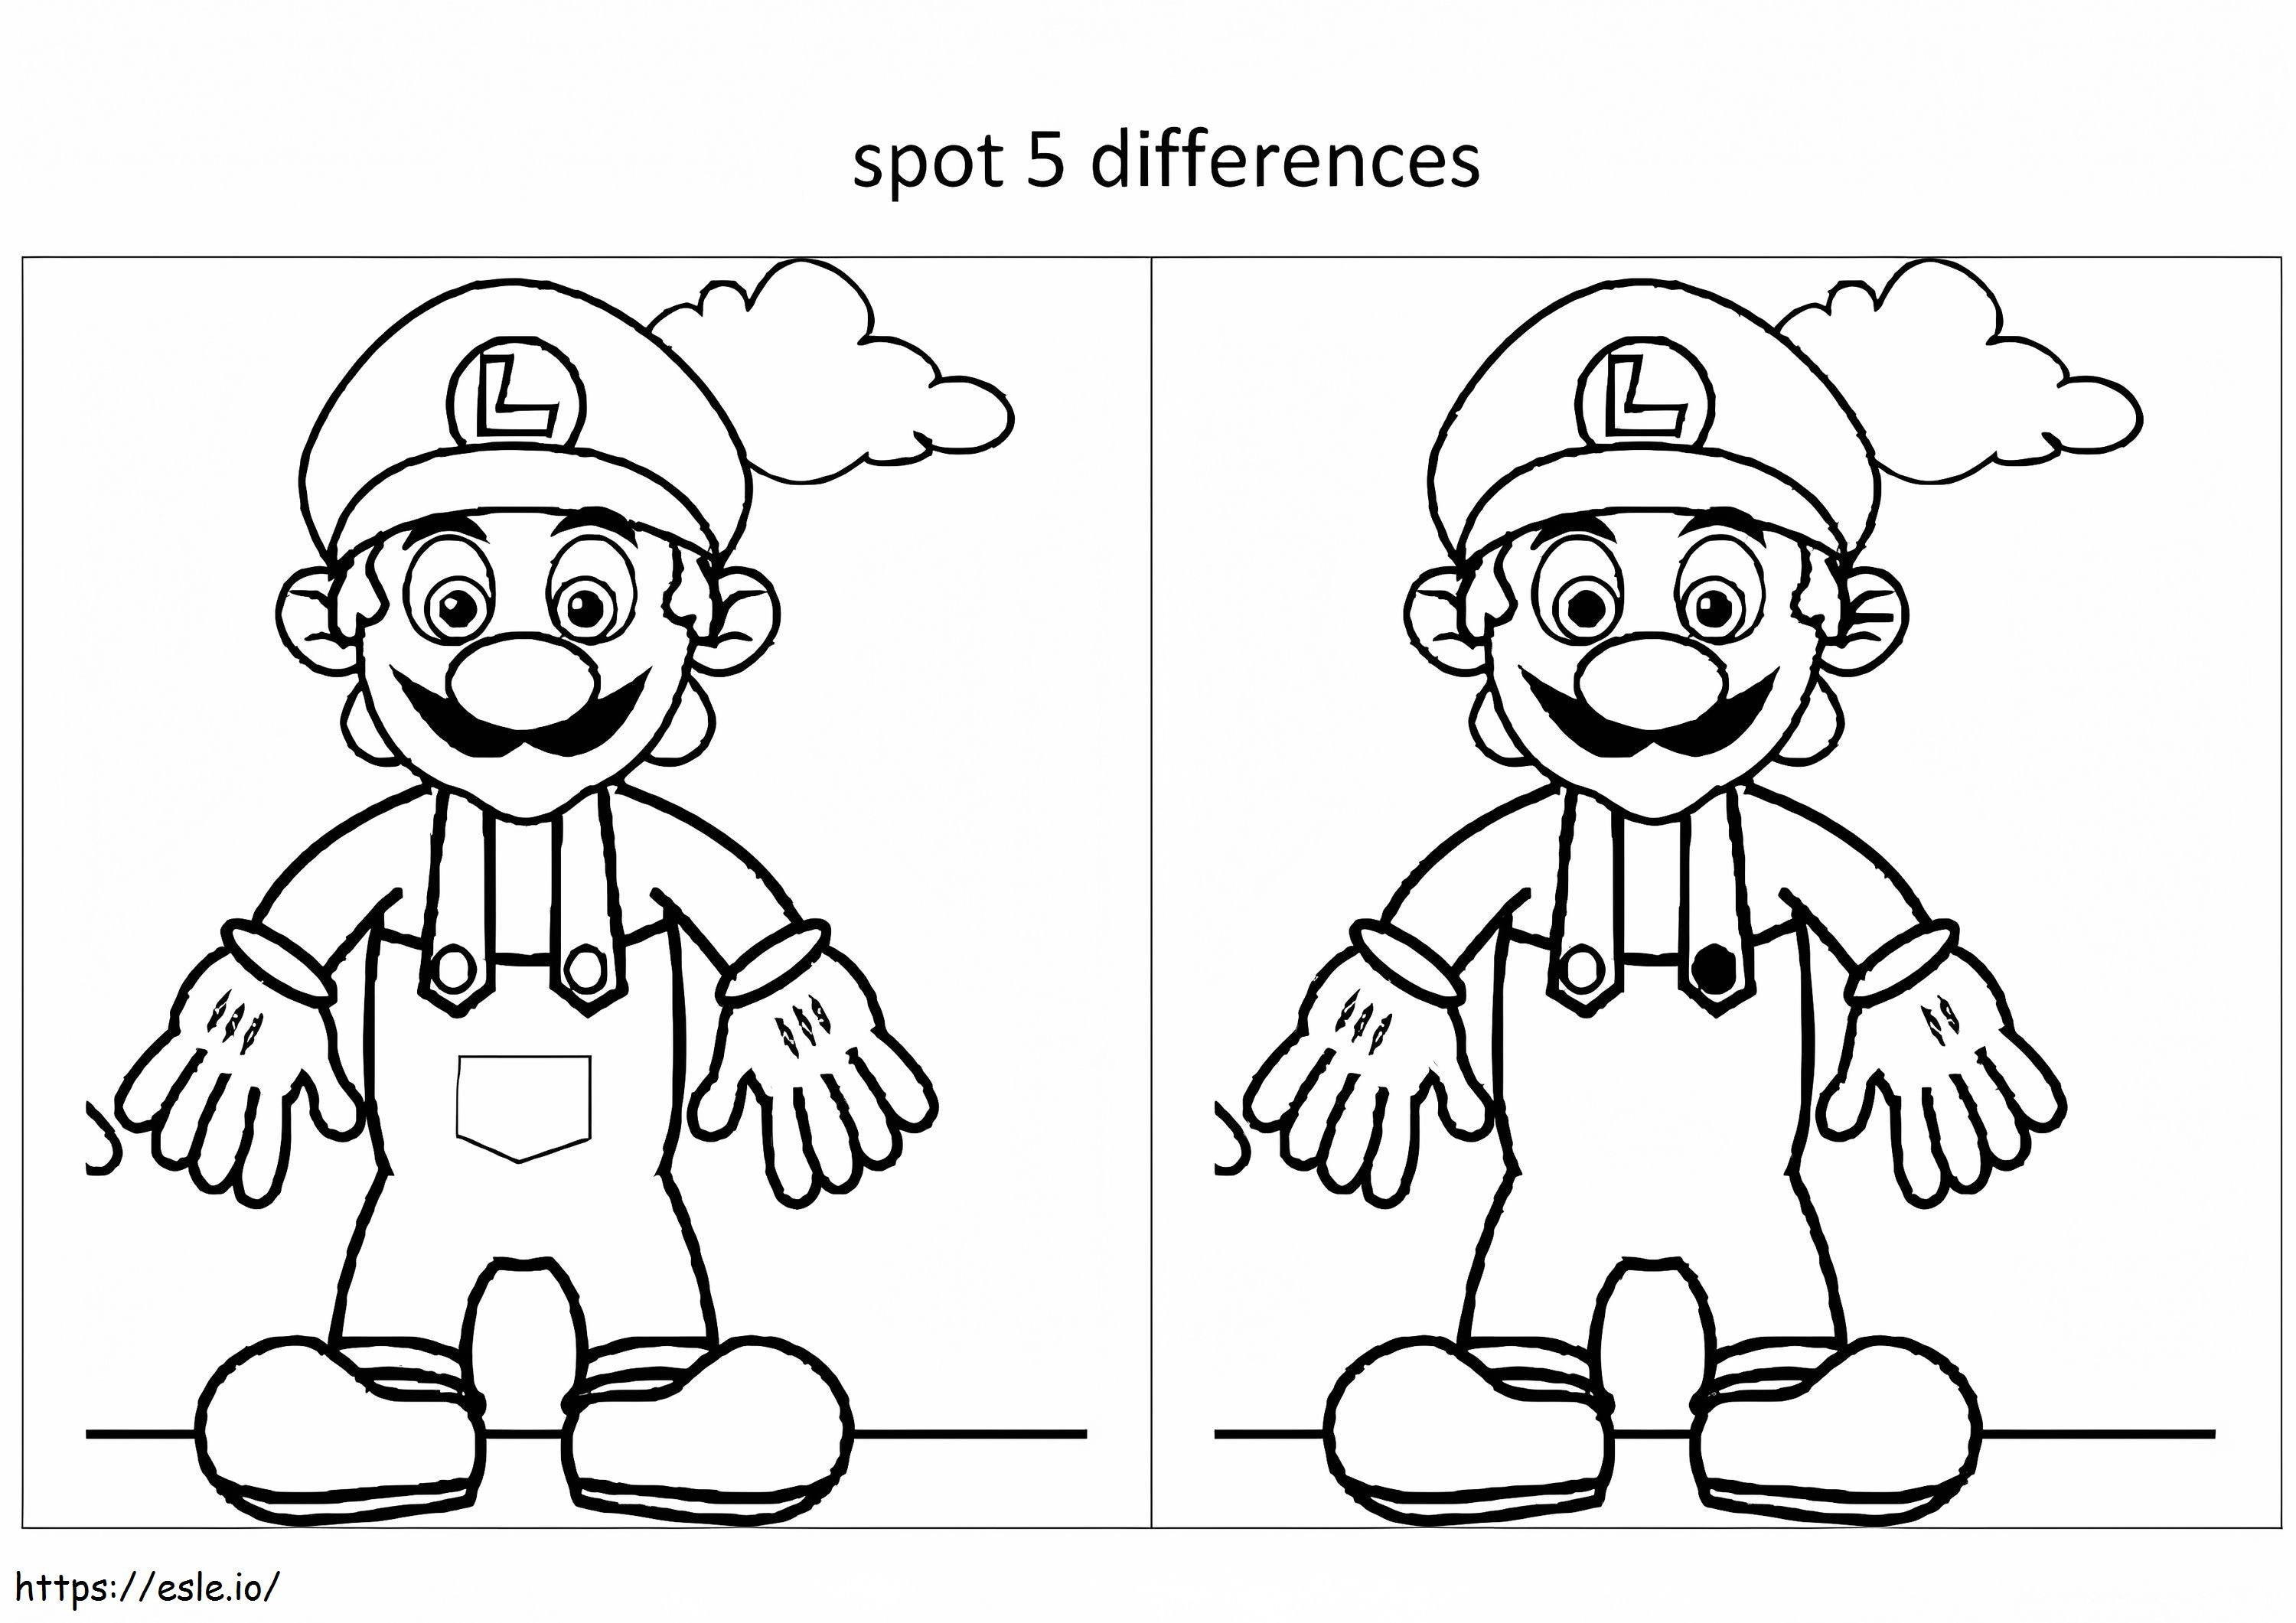 Imprimible Spot 5 Diferencias para colorear